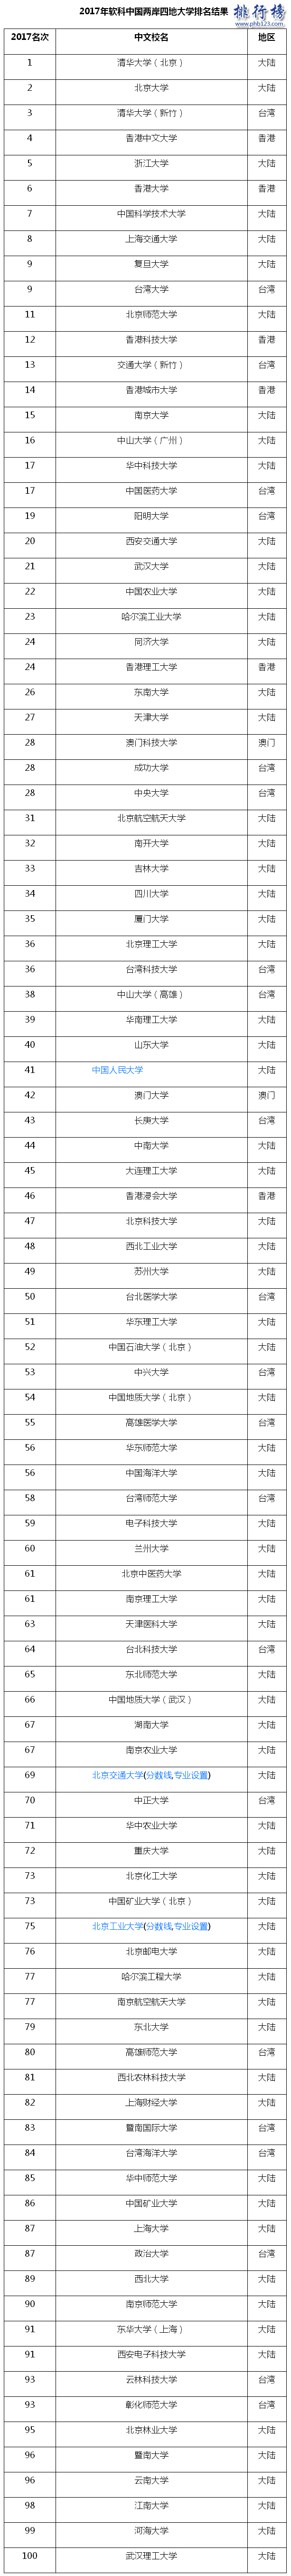 2017年中國兩岸四地大學百強排名:清北前二,台灣清華第三